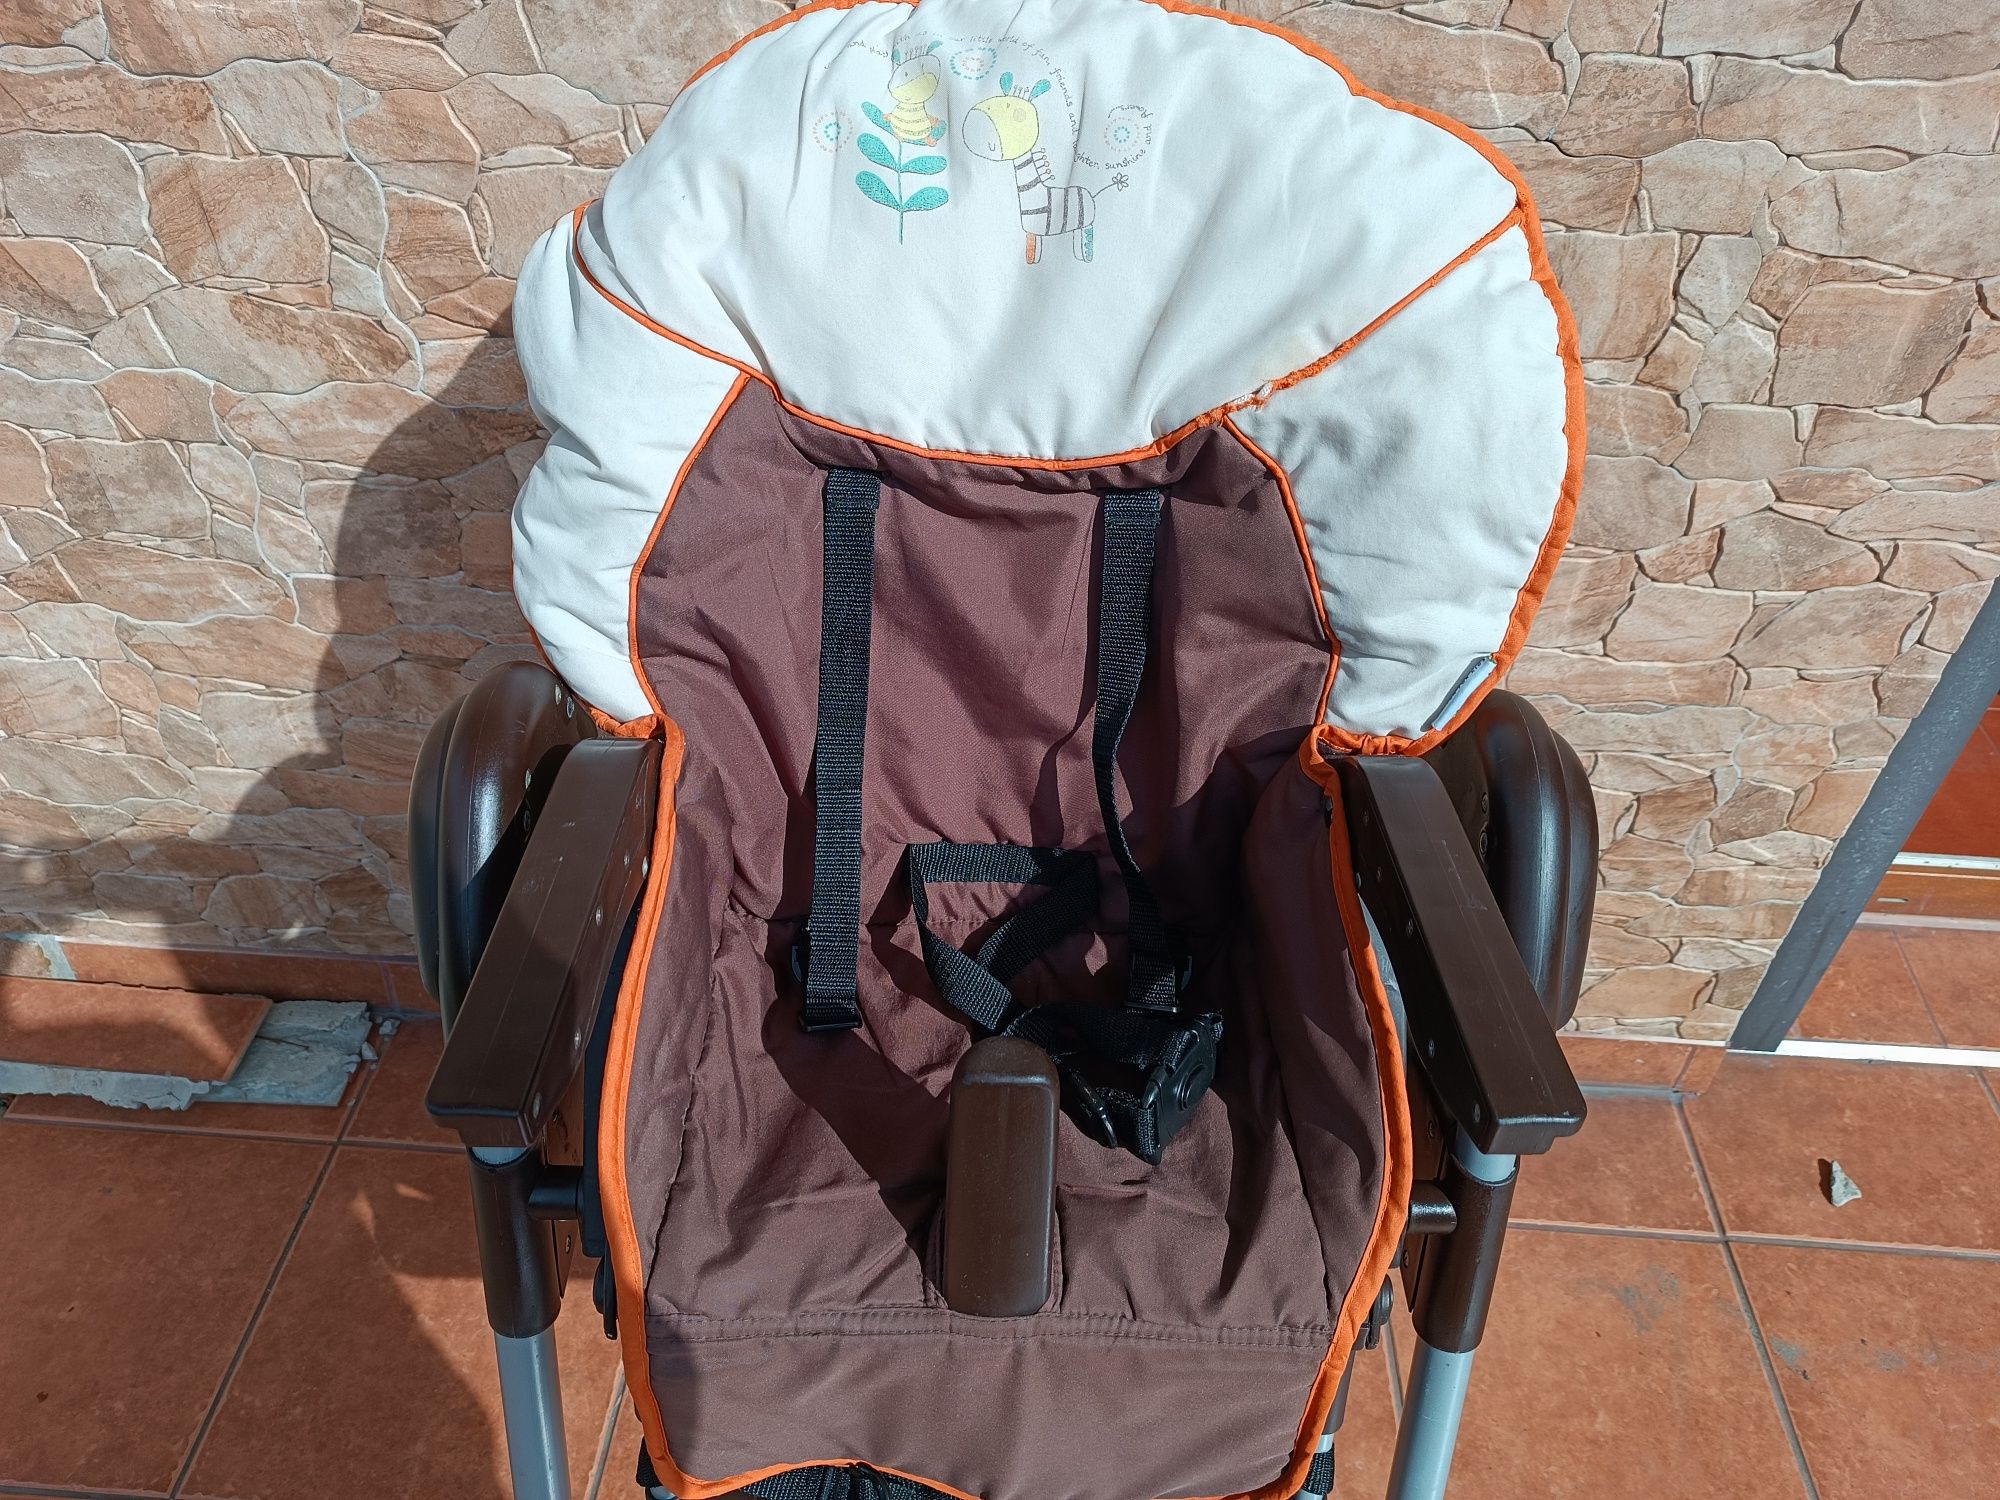 Wysokie krzesło / krzesełko do karmienia dla dziecka - HAUCK